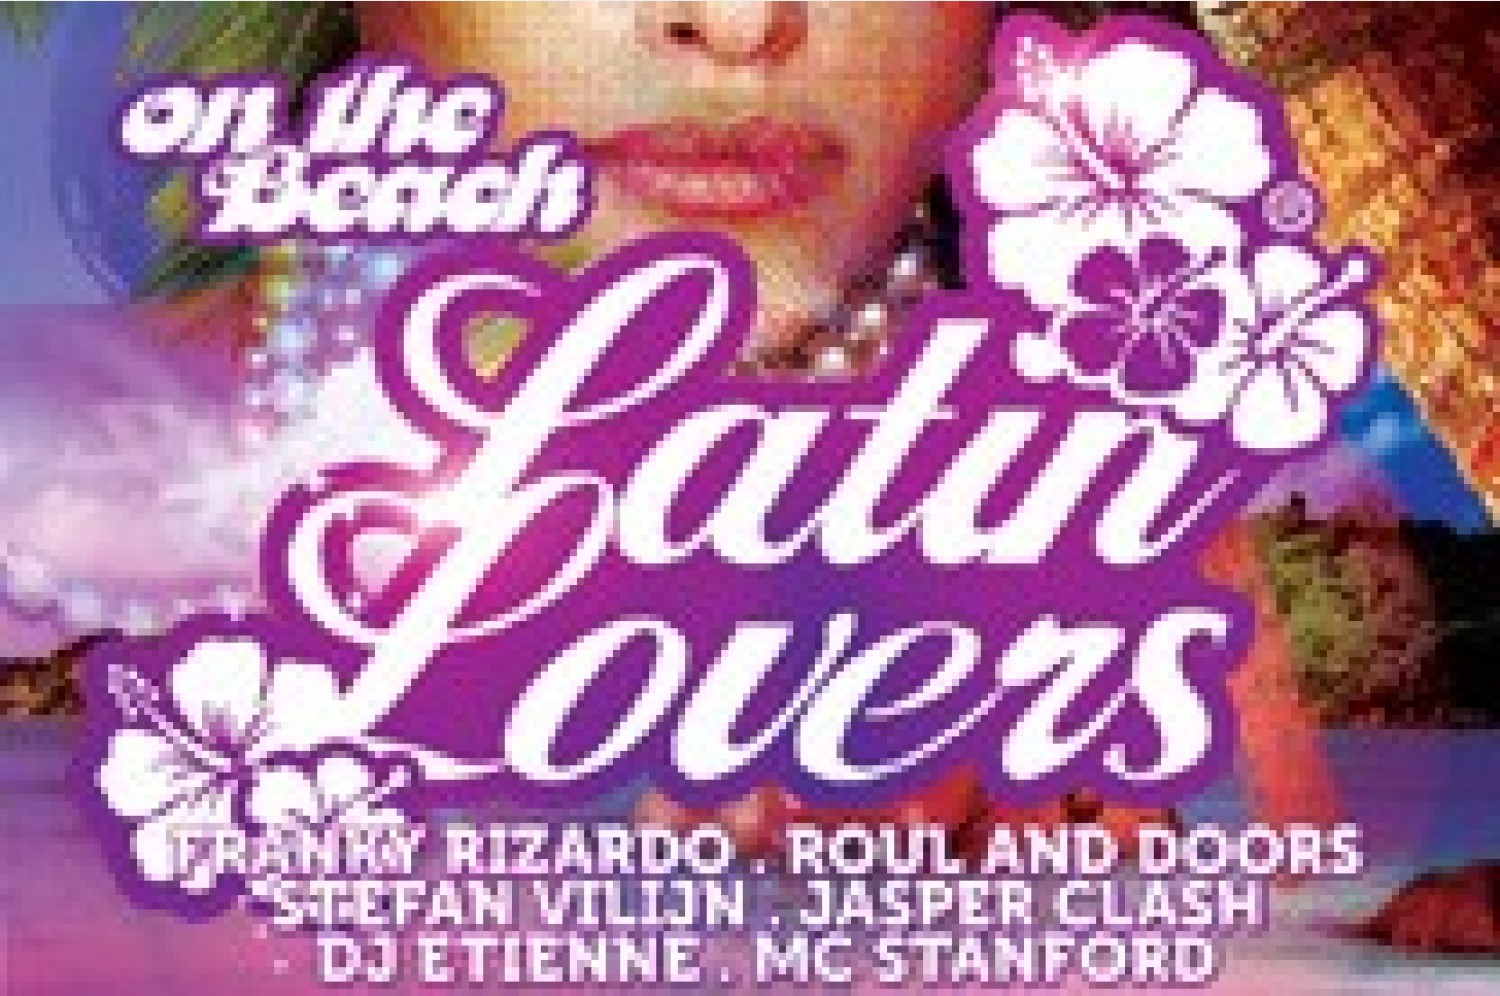 Party nieuws: Latin Lovers komt naar Rockanje op zaterdag 25 mei!